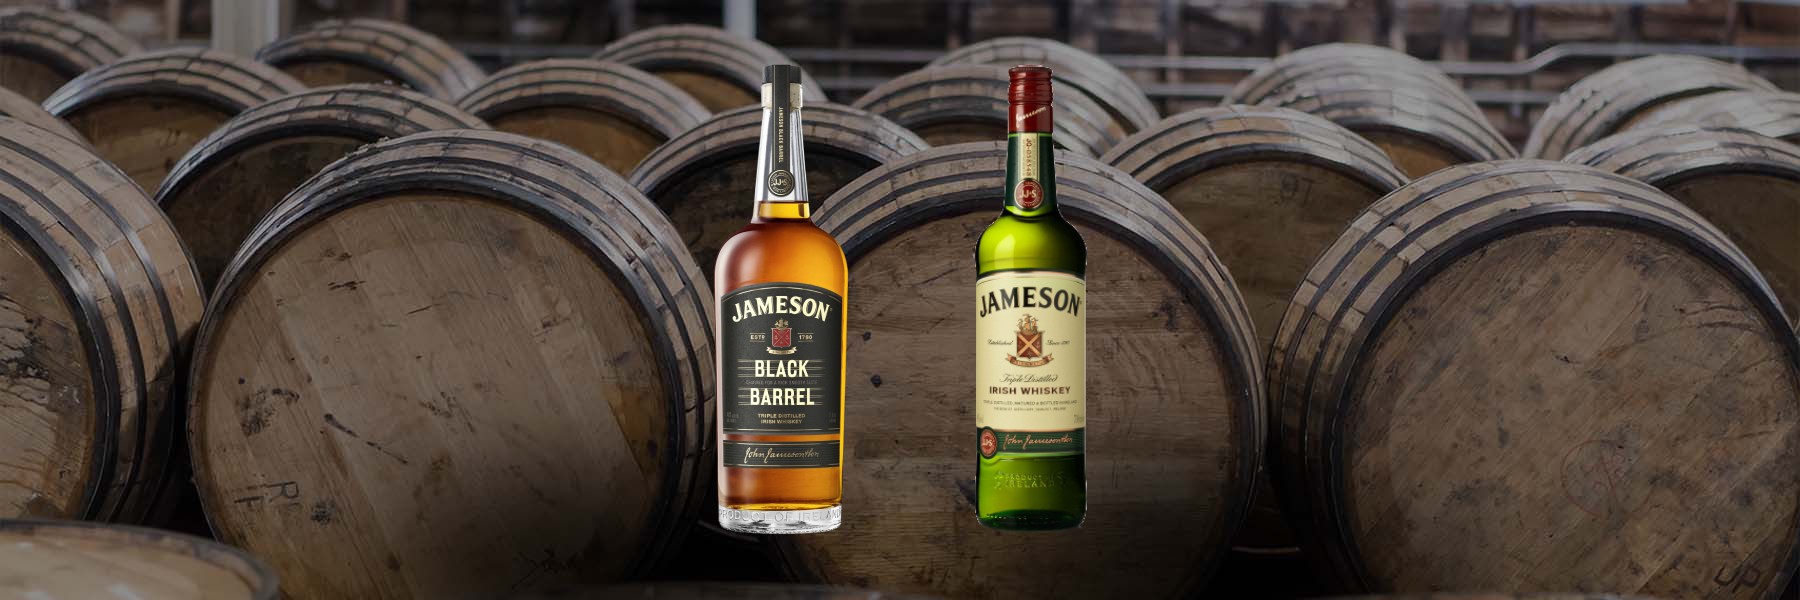 Jameson Black Barrel vs Regular: Irish Sibling Rivalry